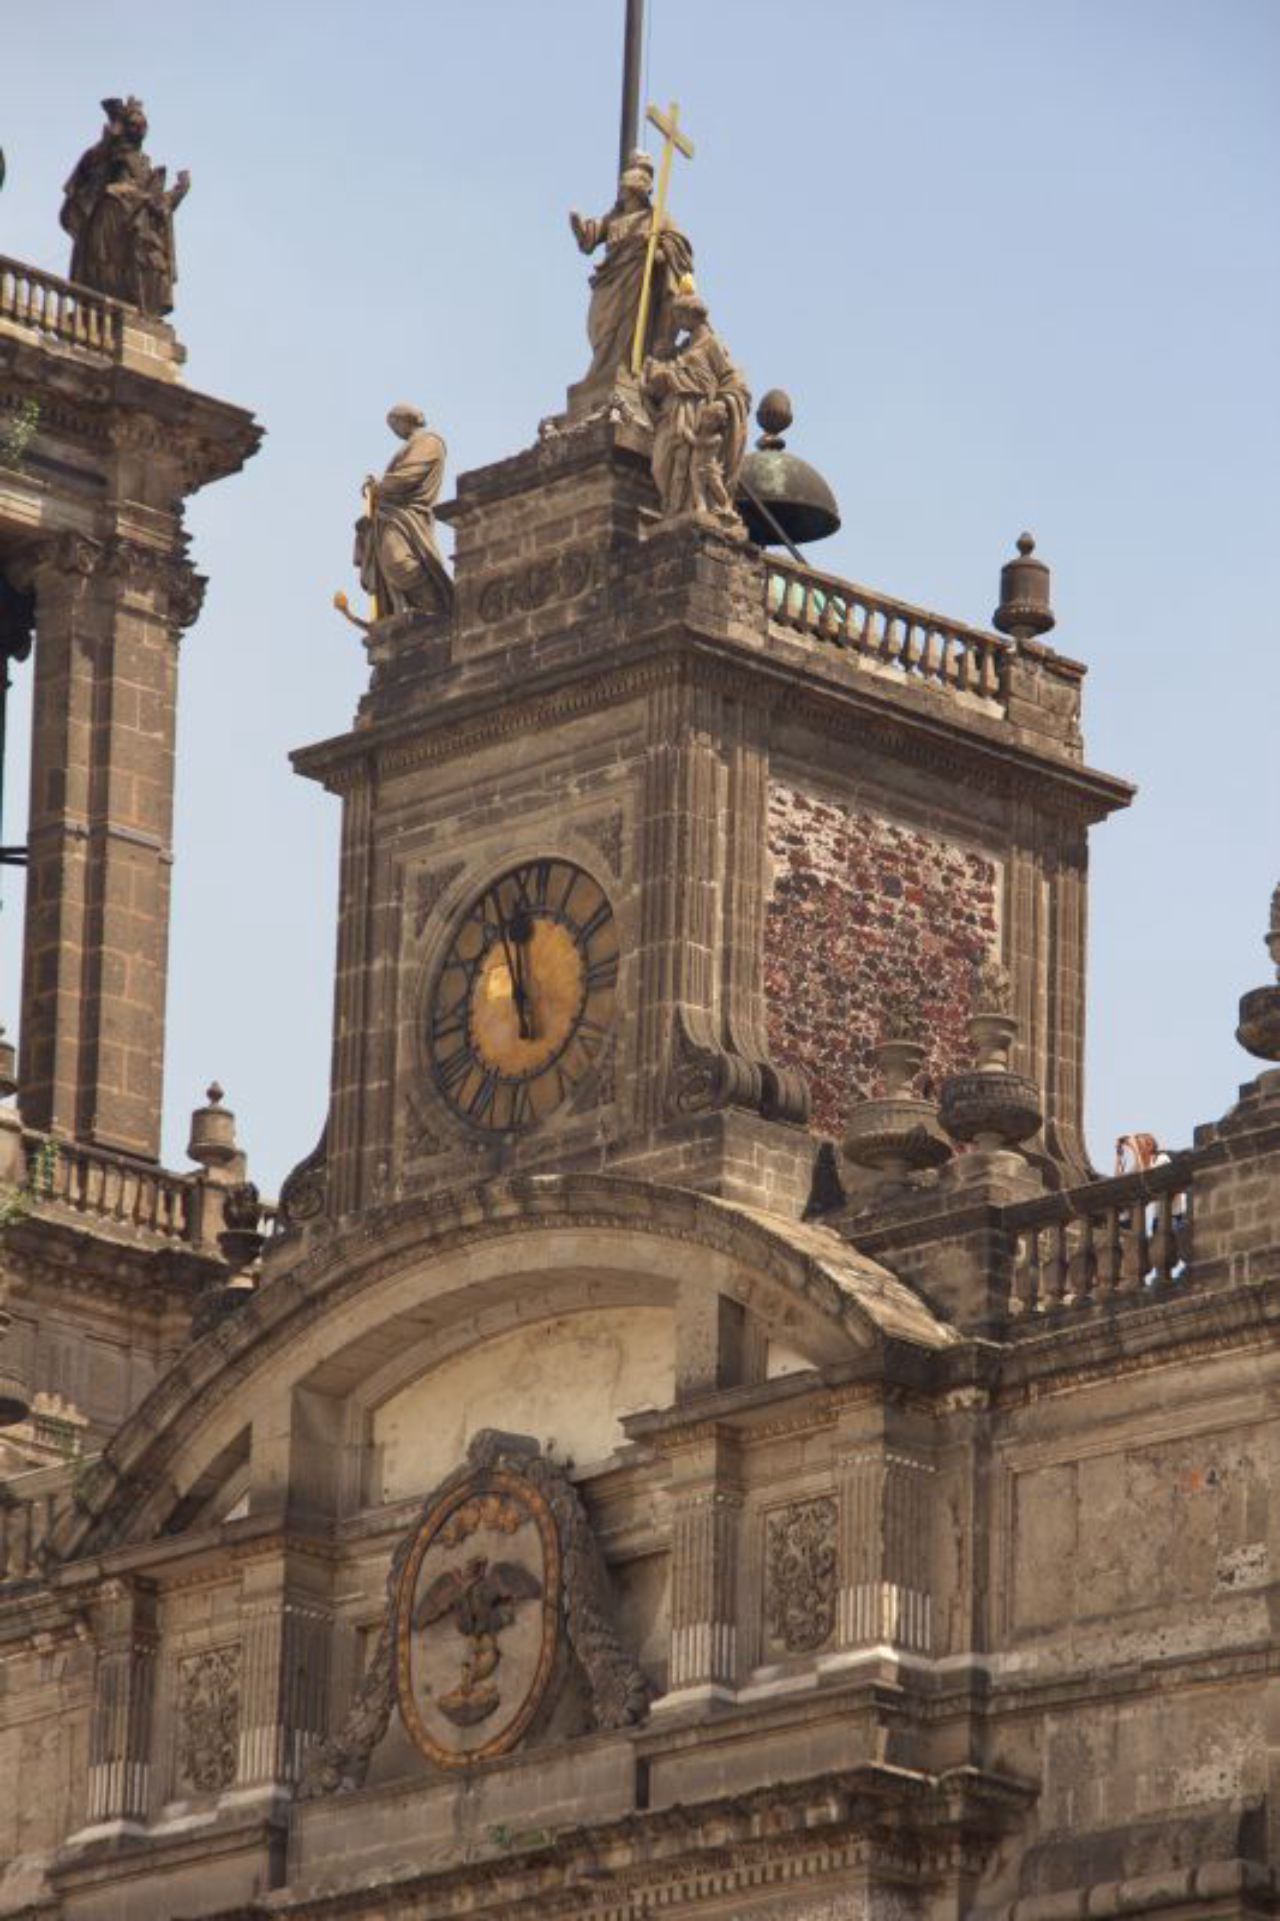 Na frente, a fachada em estilo herreriano. Na lateral, detalhe em pedras vermelhas utilizadas na construção de templos astecas e teotihuacanos.